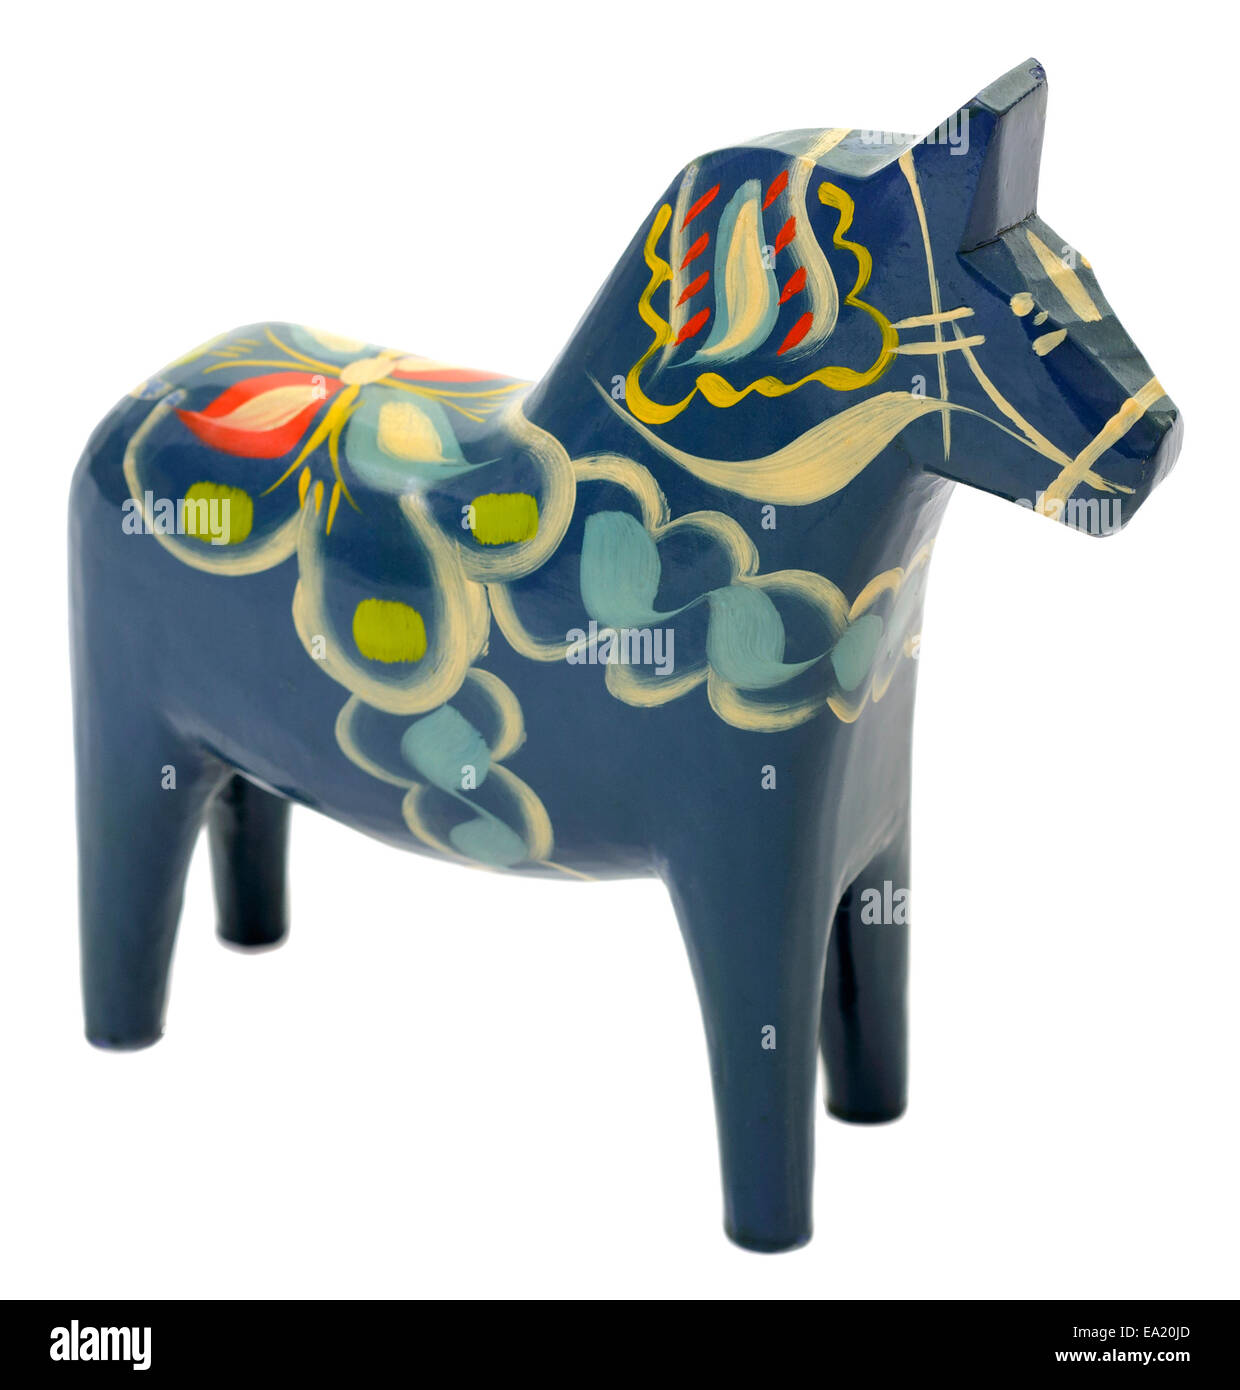 Ein Dalarna Pferd oder Dala Pferd (Dalahäst) ist ein traditionelles geschnitzt, bemalt hölzerne Pferd Statuette in der schwedischen Provinz Dalarna mit Ursprung. Model Release: Nein Property Release: Nein. Stockfoto